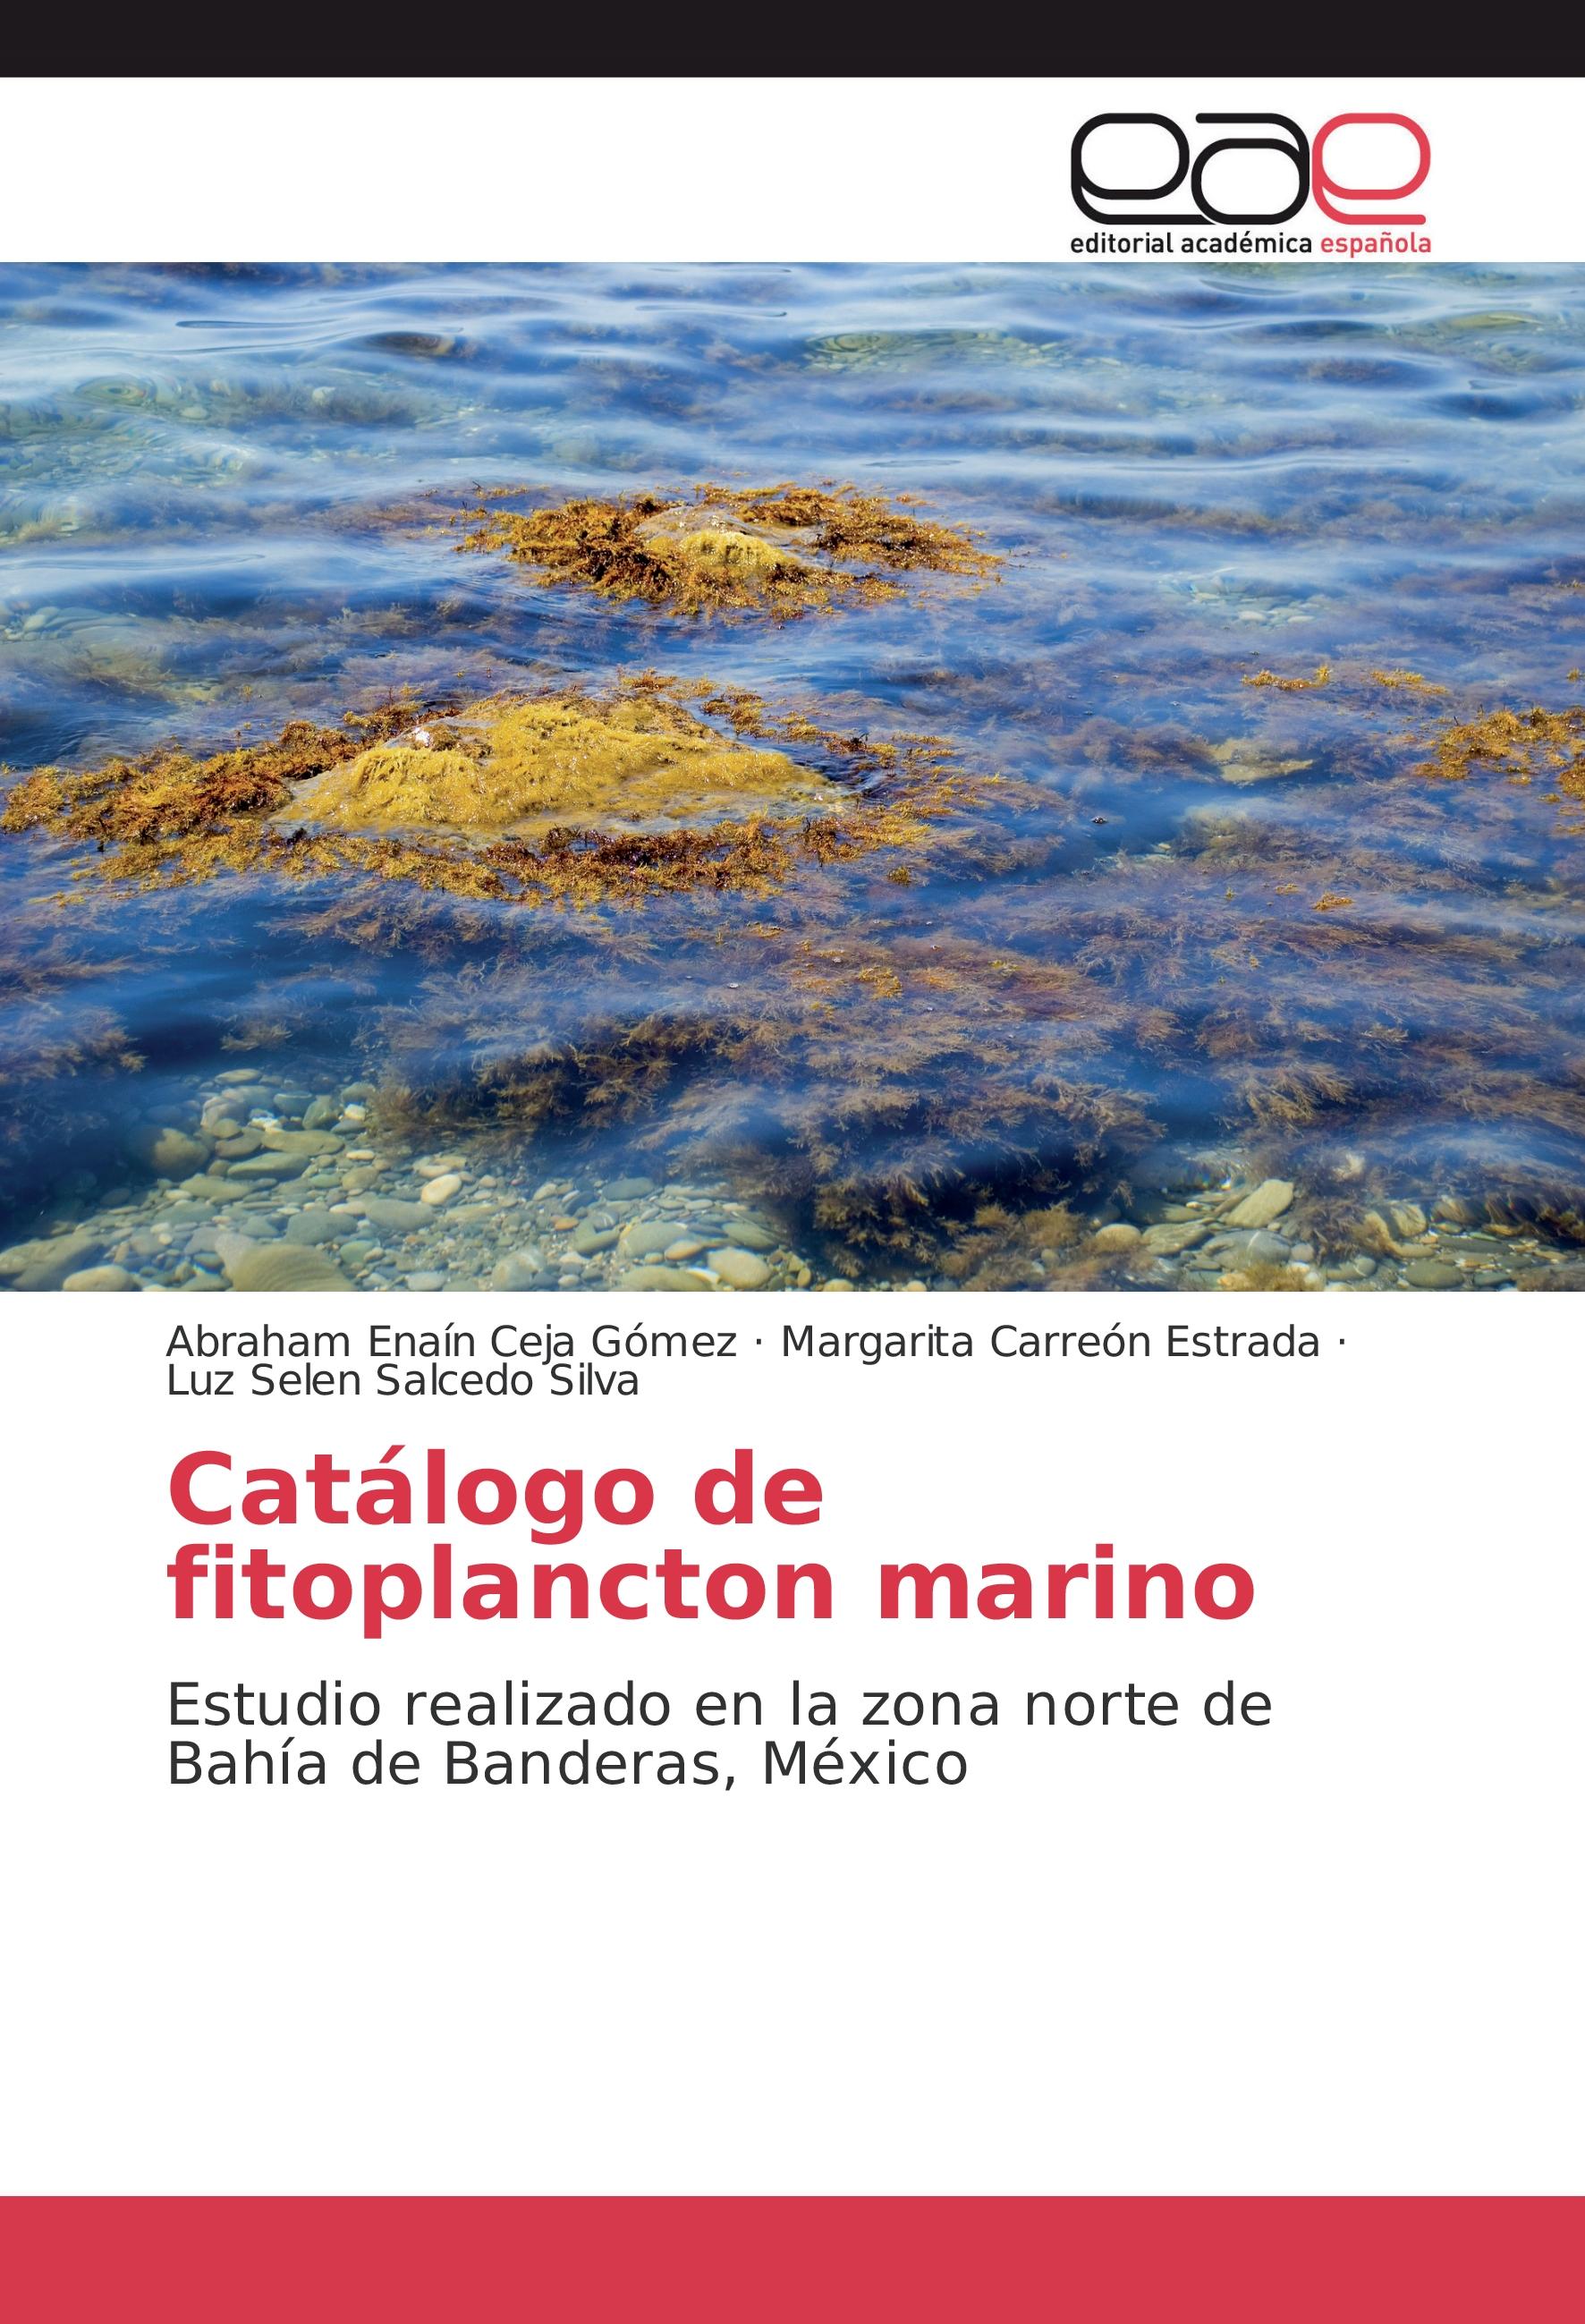 Catálogo de fitoplancton marino - Abraham Enaín Ceja Gómez Margarita Carreón Estrada Luz Selen Salcedo Silva